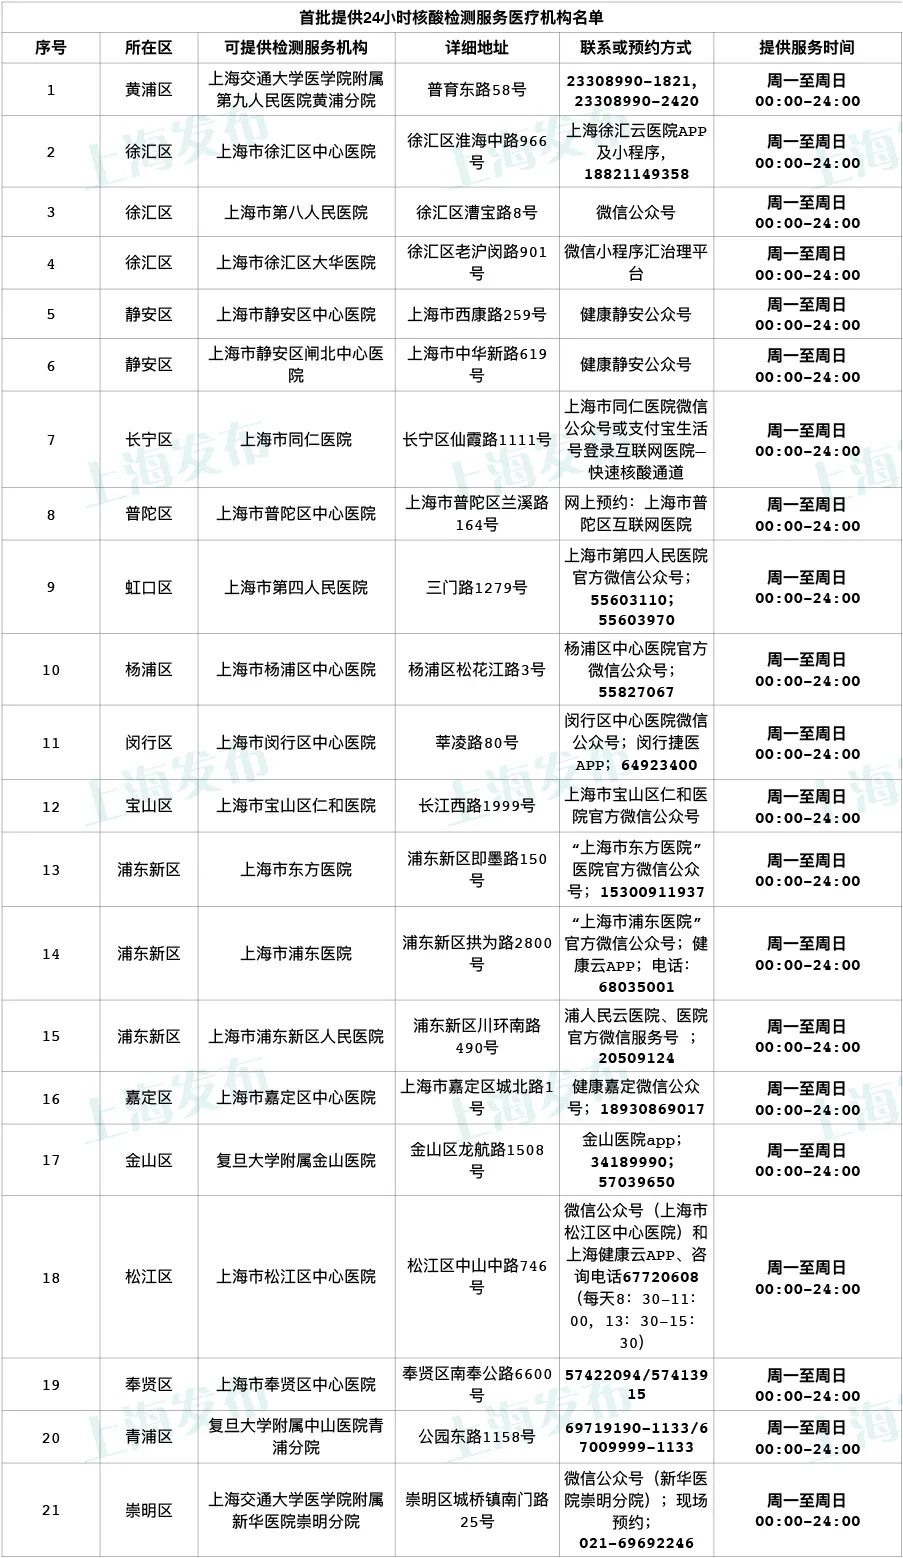 10月28日上海市疫情最新消息公布  上海推出首批24小时核酸检测服务机构